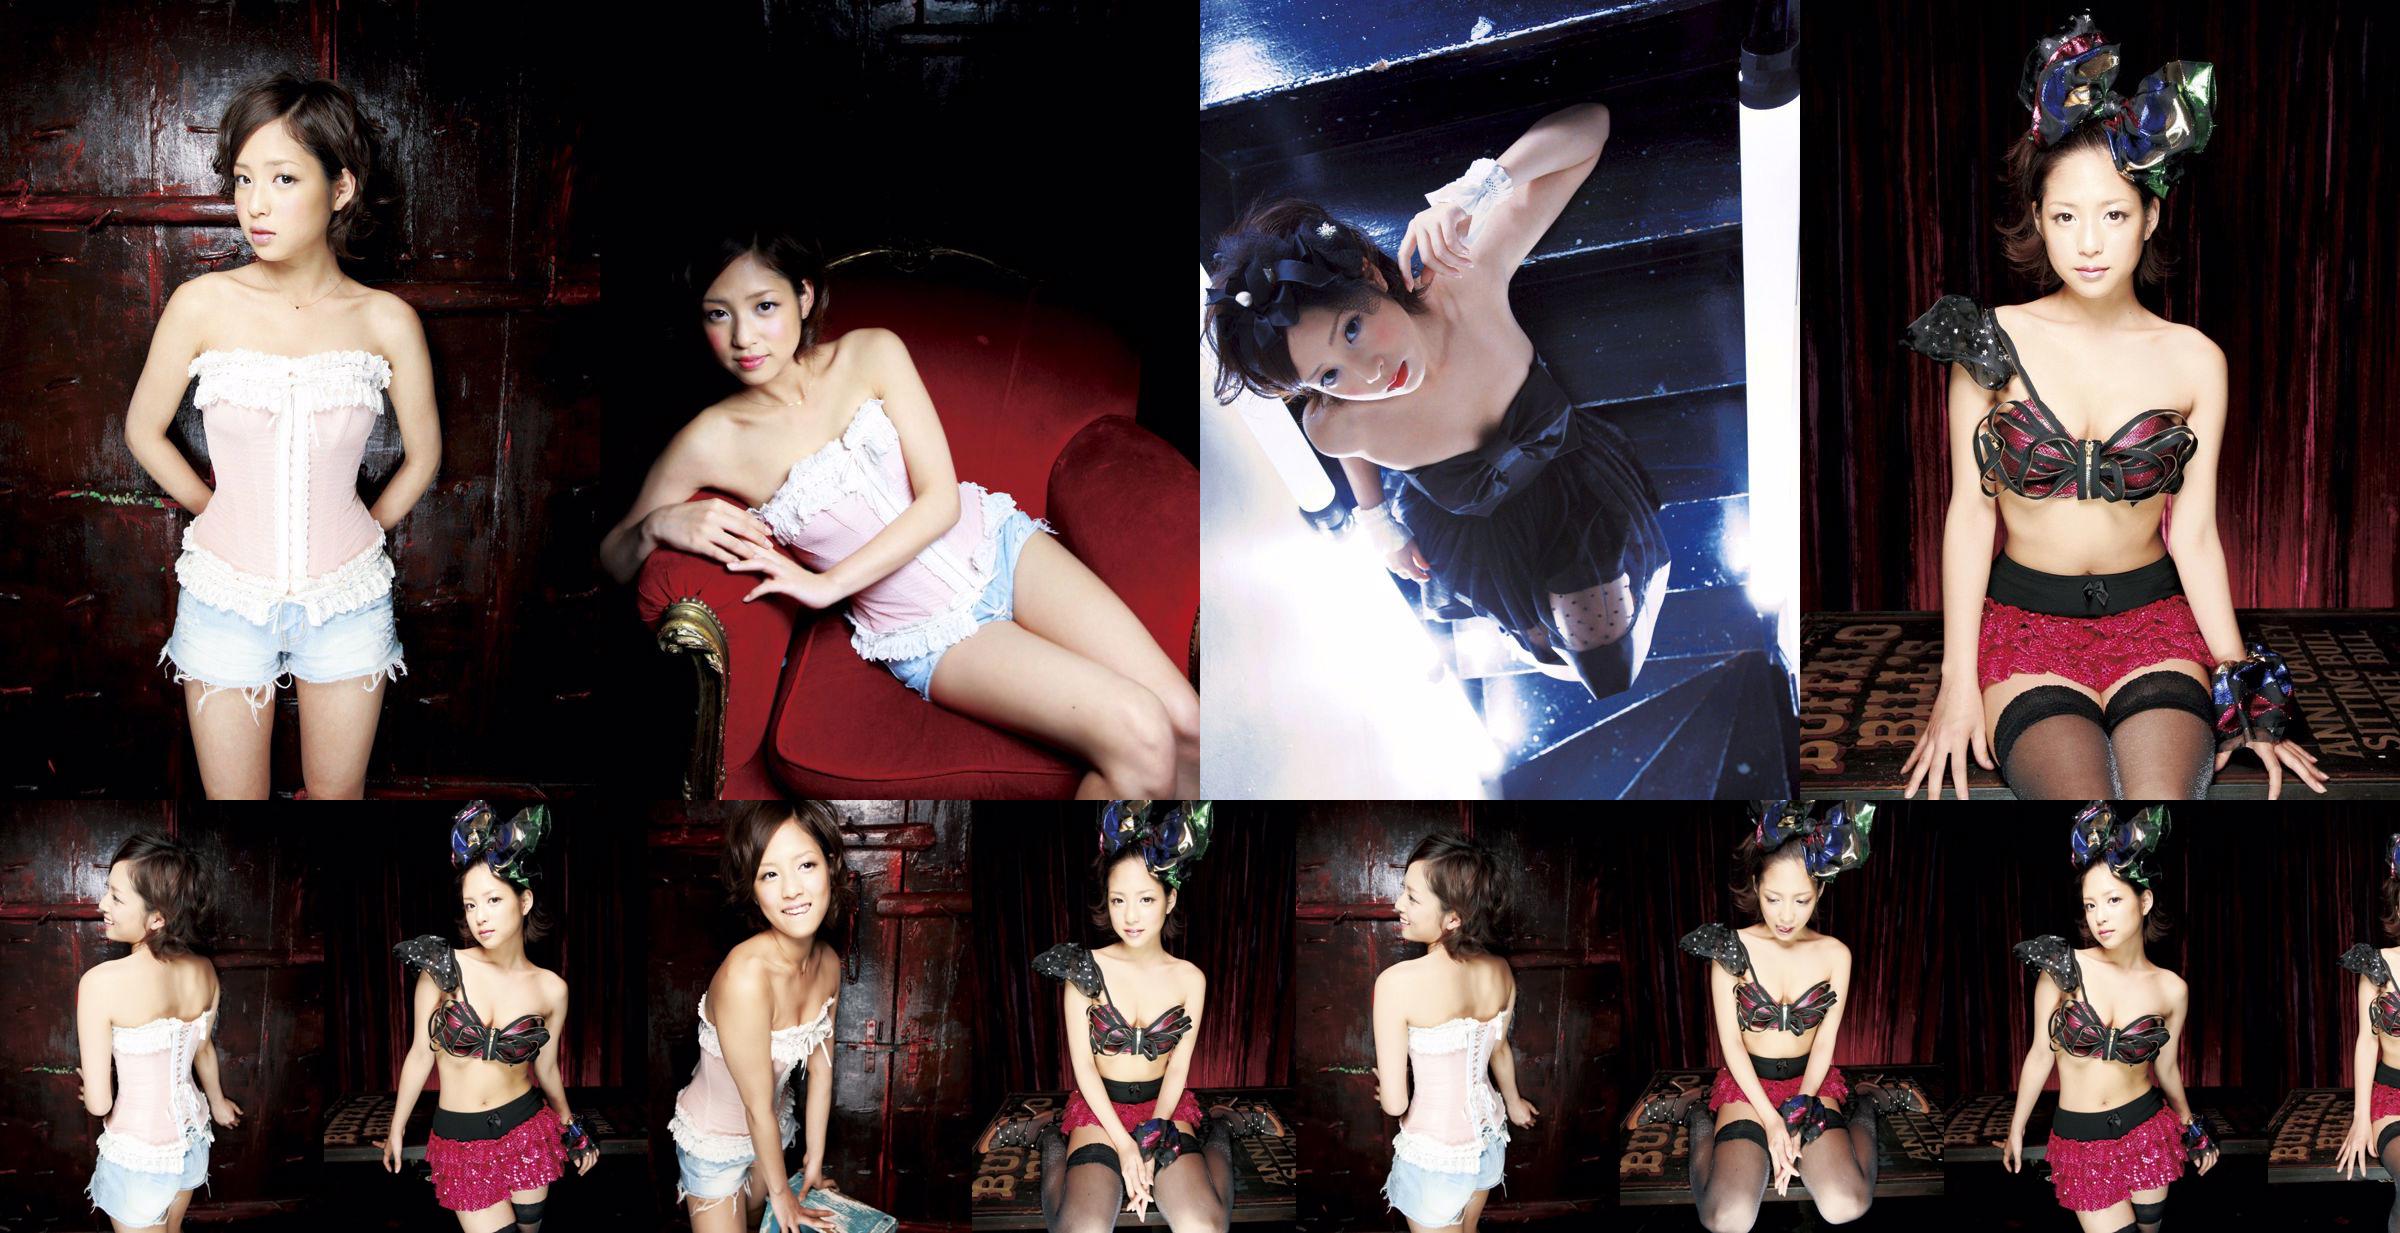 [Sabra.net] Orihara Miyu Moulin Rouge No.147664 Seite 2